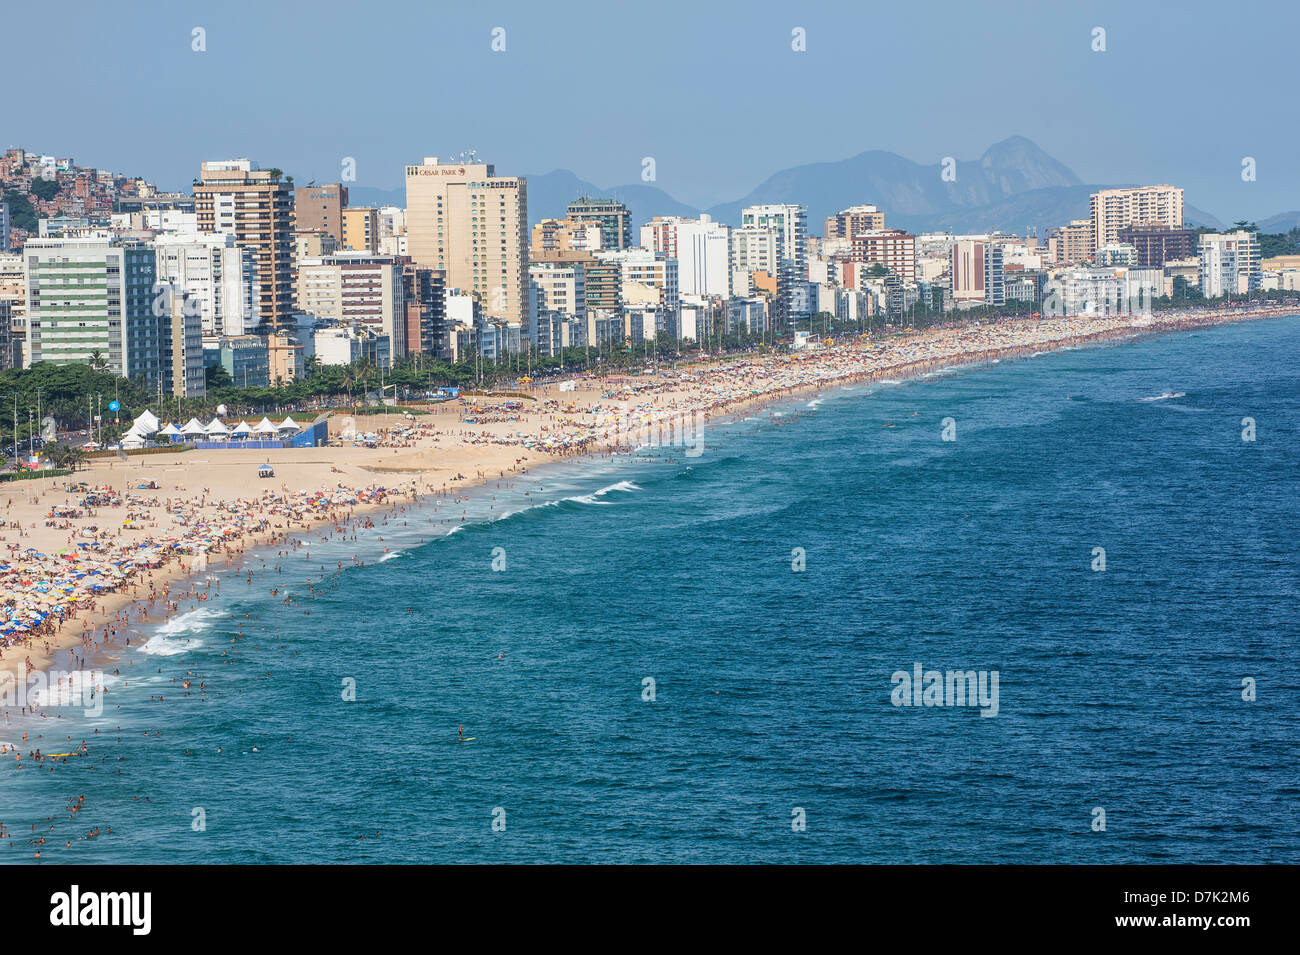 Leblon beach, Rio de Janeiro, Brazil Stock Photo